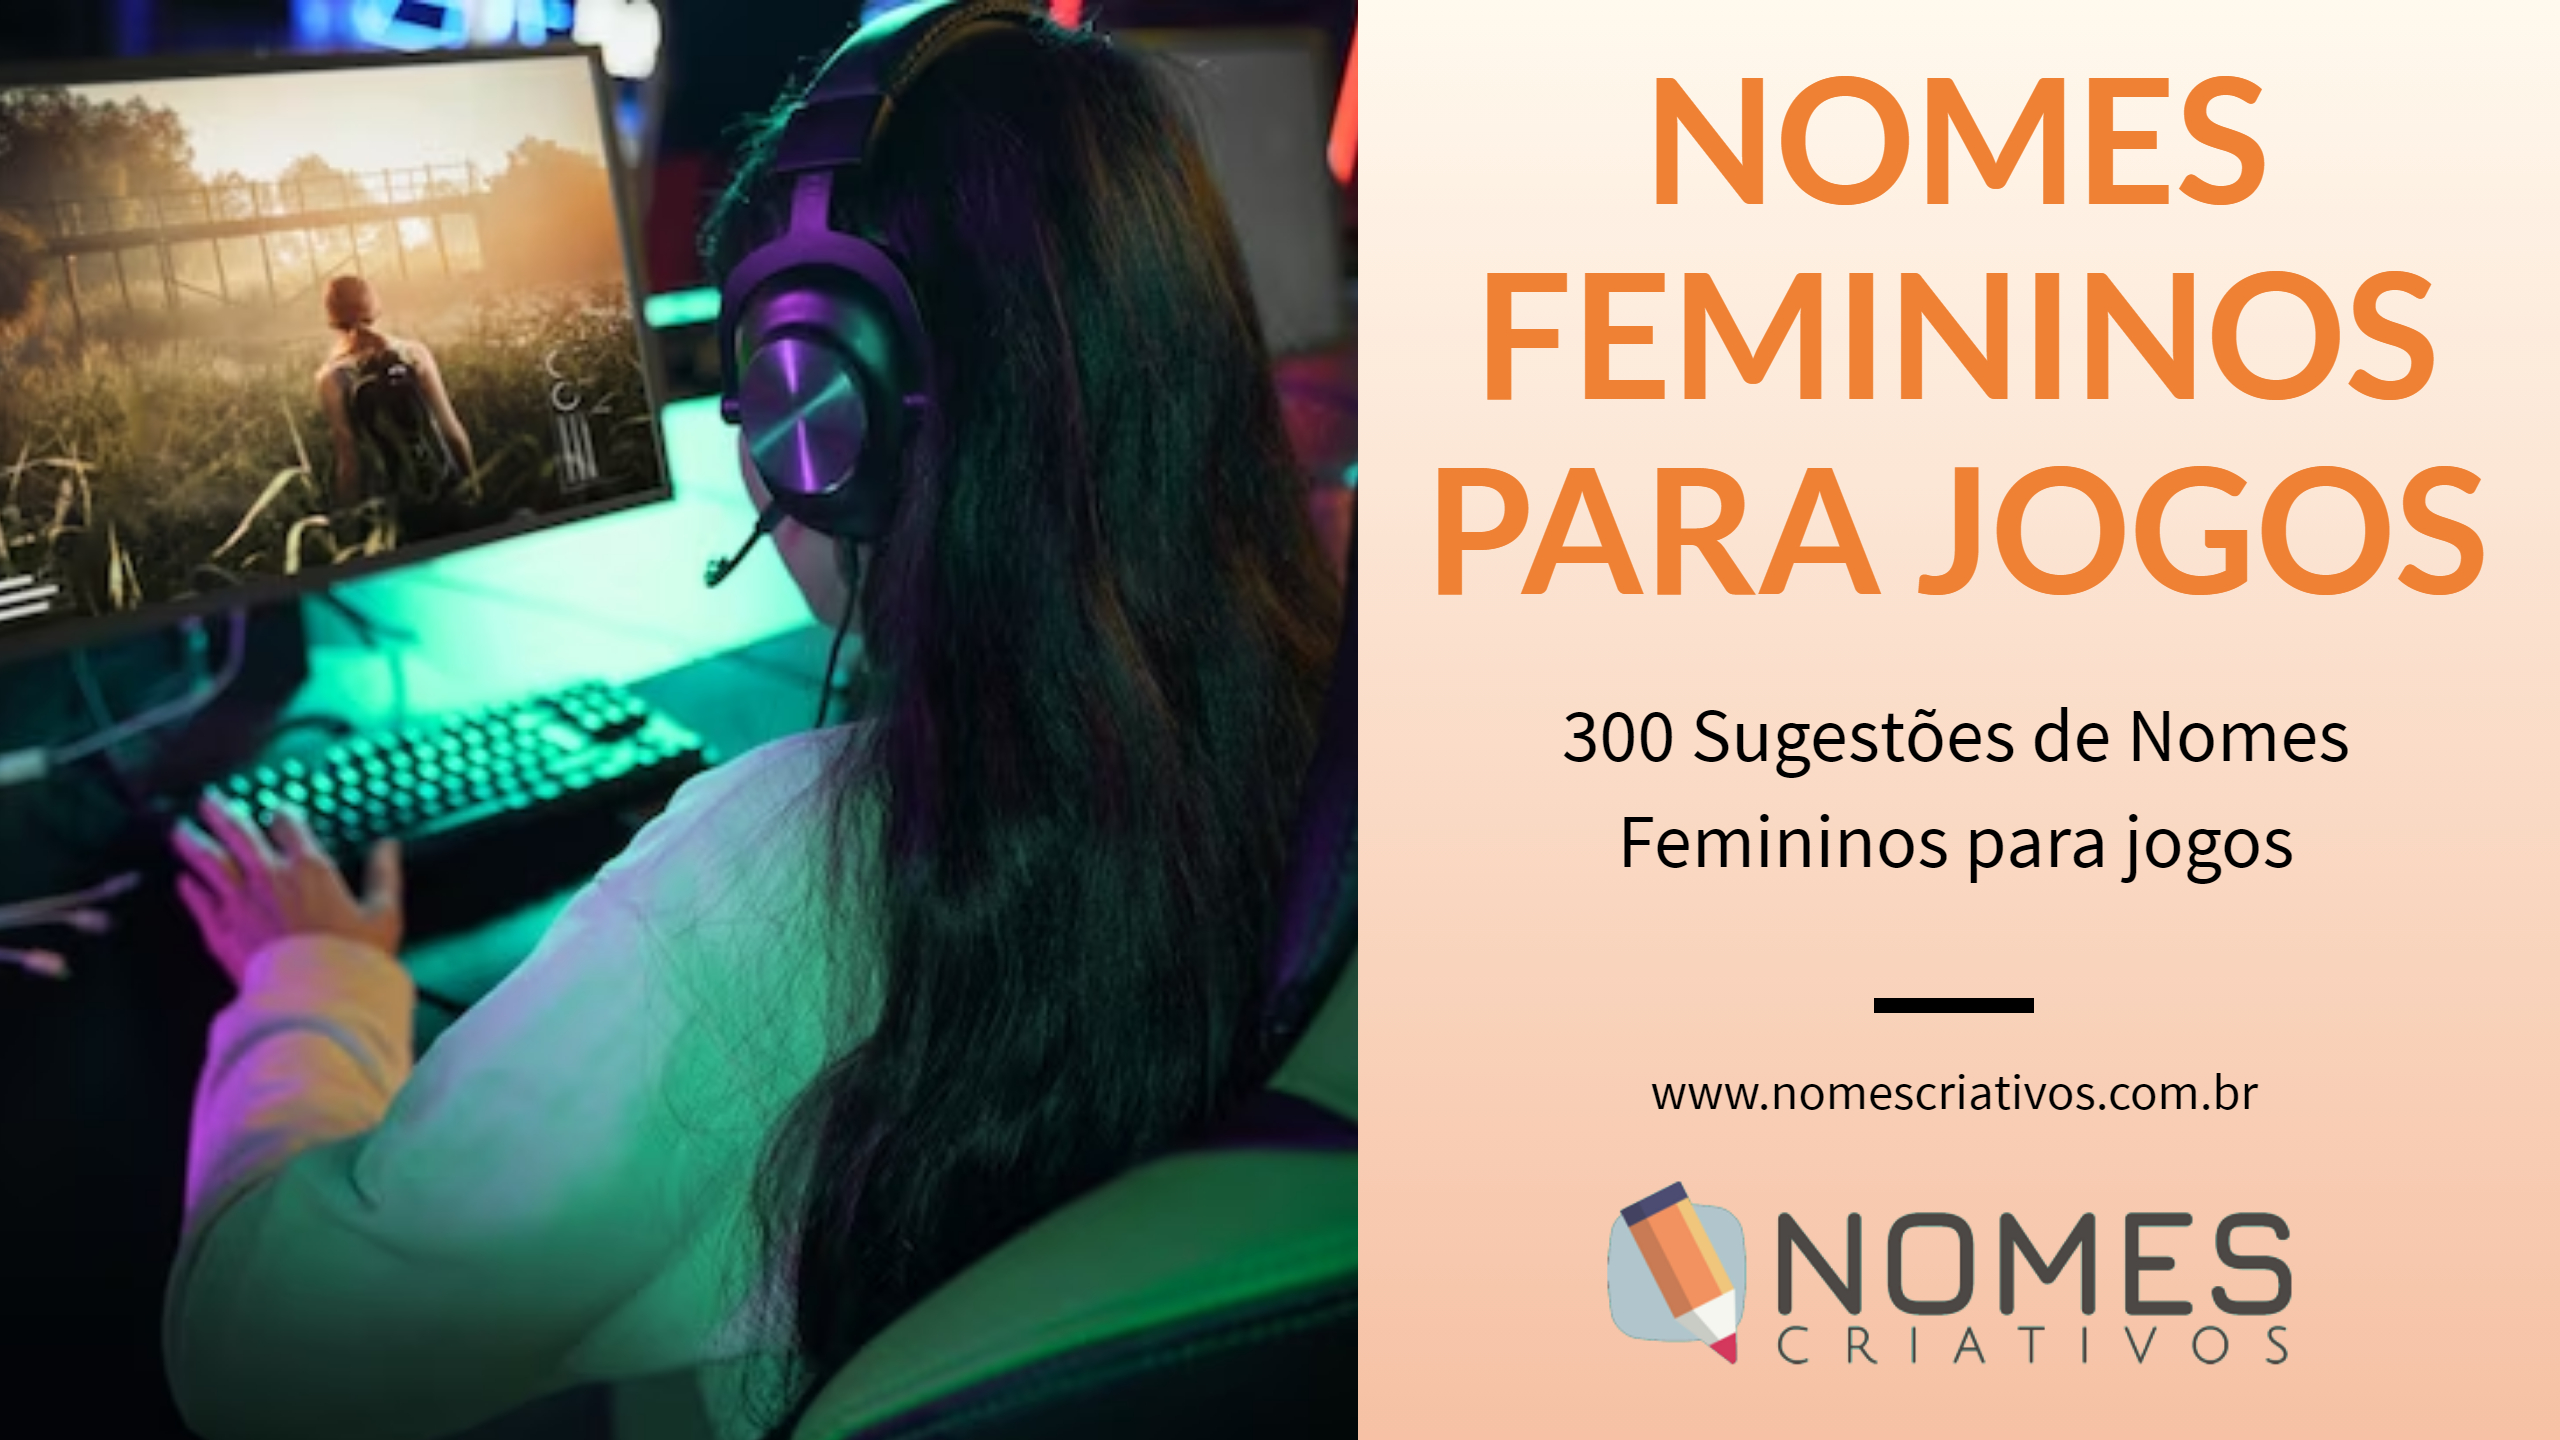 300 Nomes Femininos para Jogos - Nomes Criativos